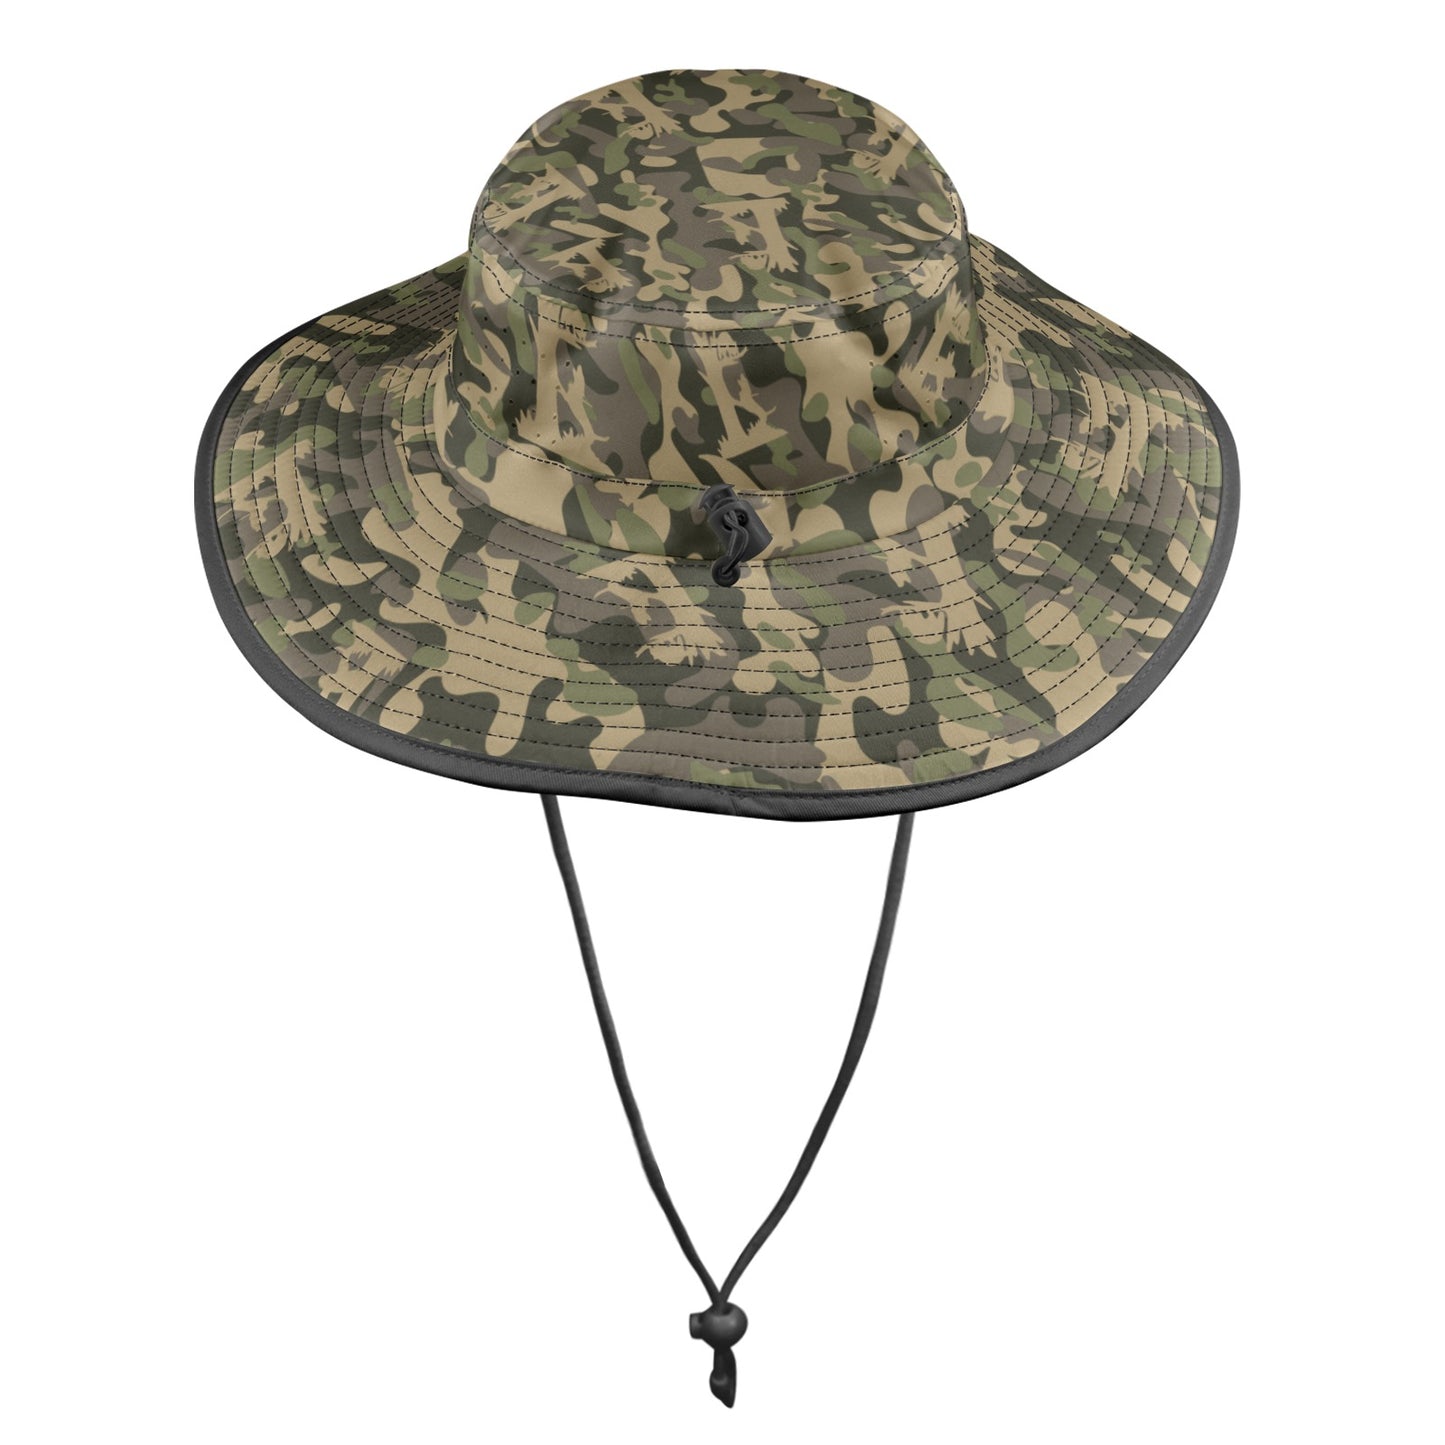 Treed Coon Camo Bucket Hat